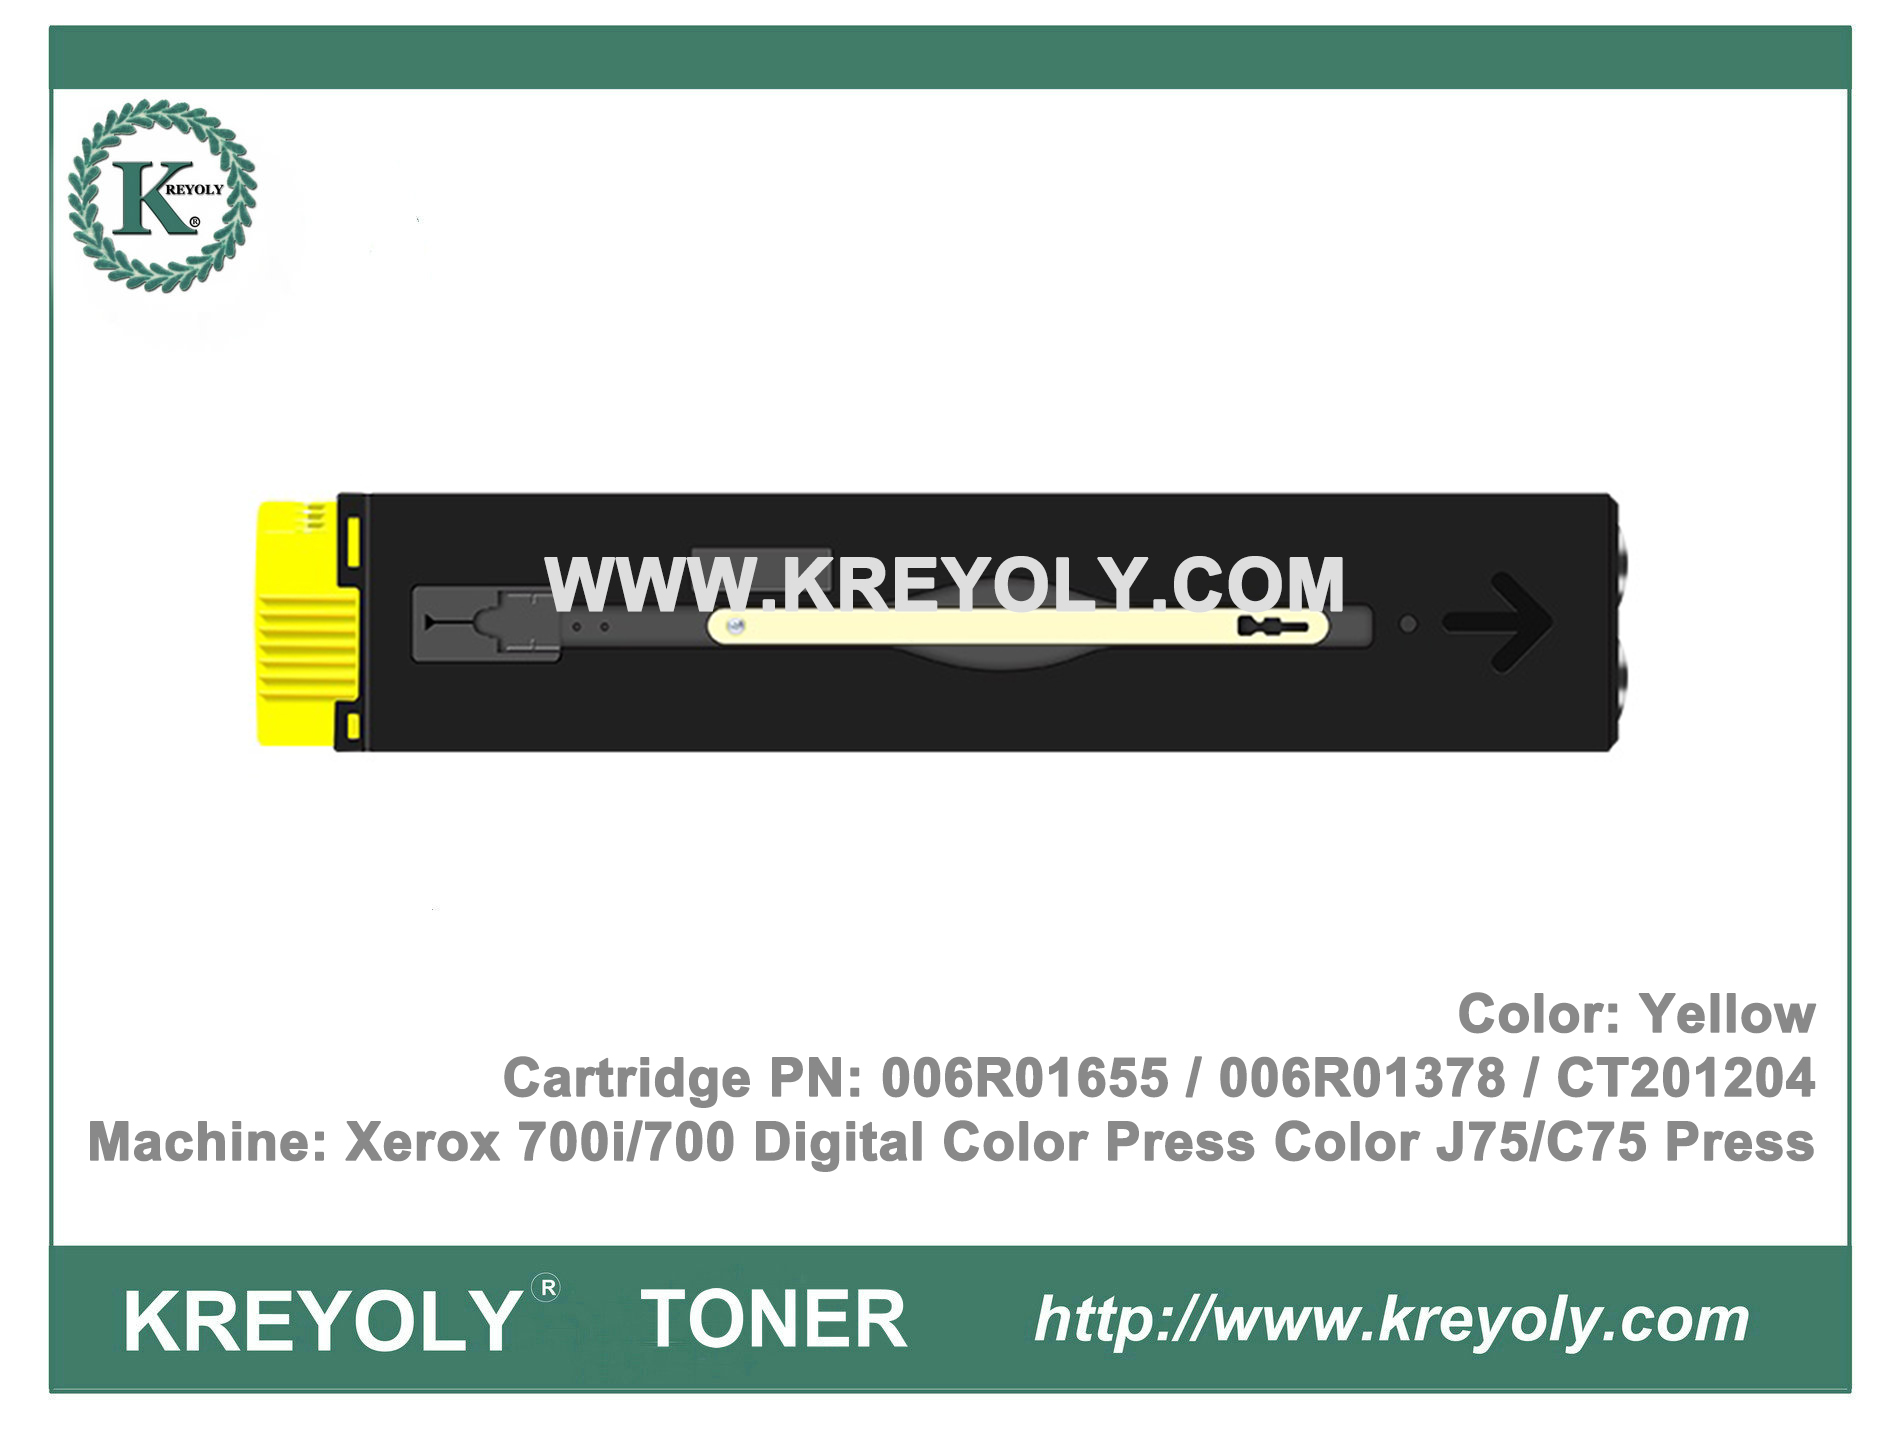 Cartucho de tóner para prensa digital en color Xerox 700i / 700 Prensa en color J75 / C75